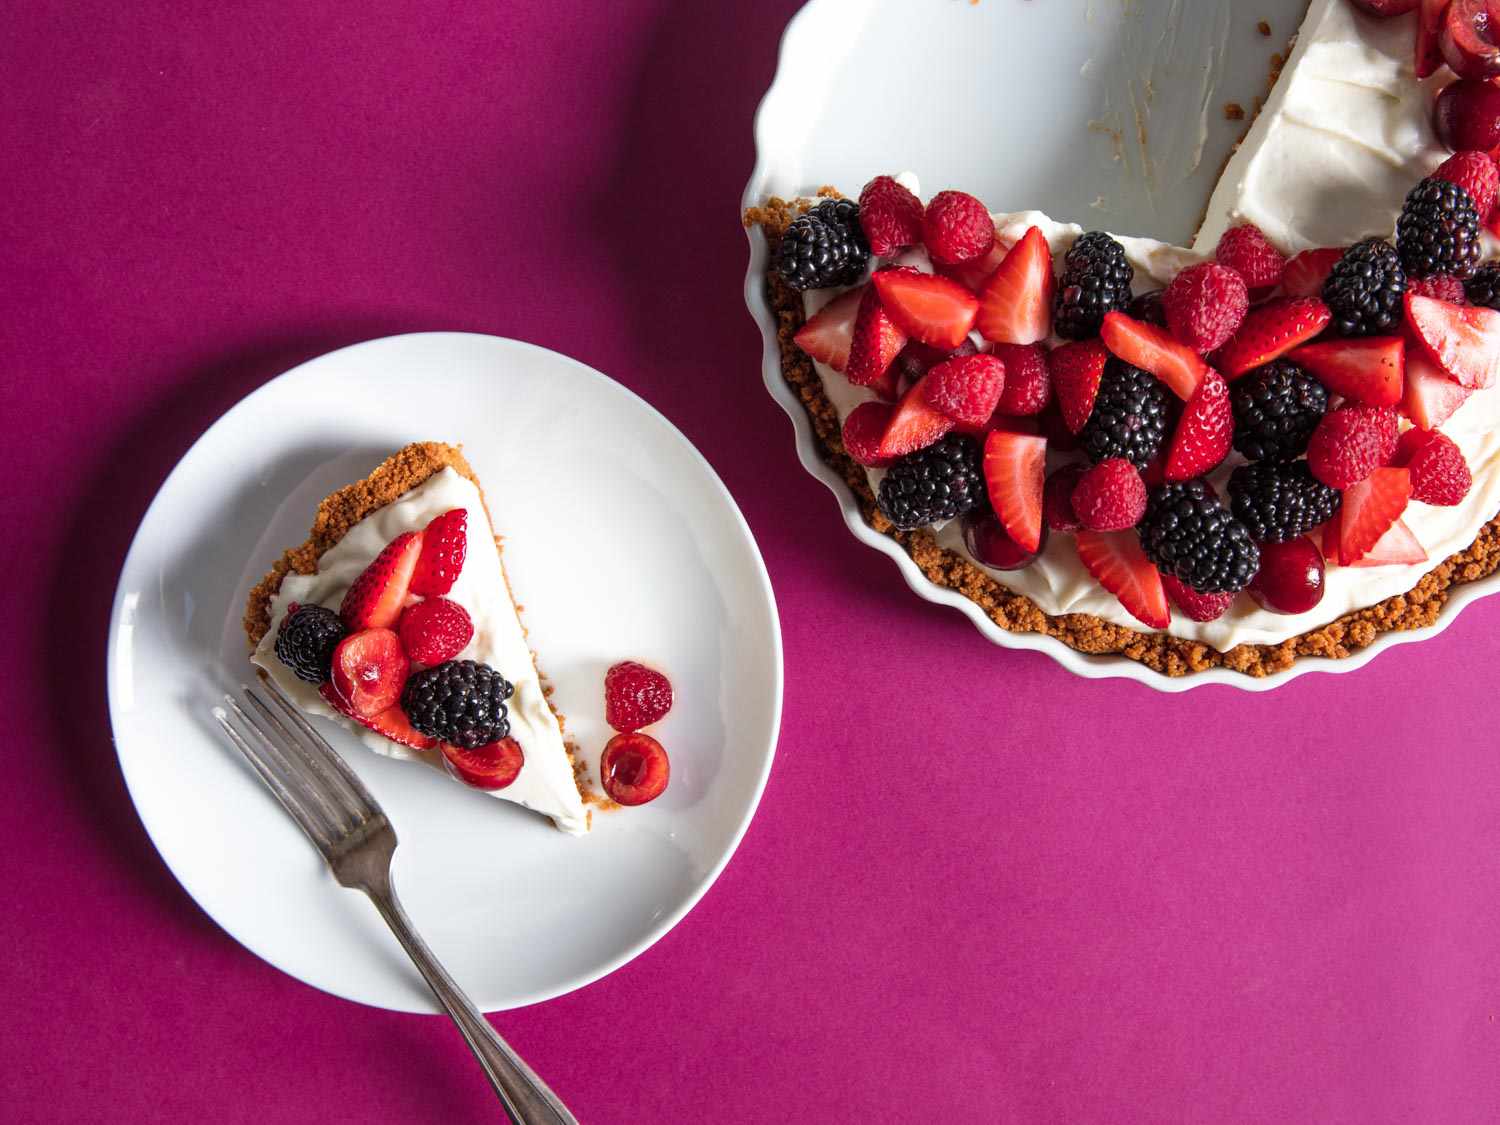 头顶上点缀着浆果的芝士蛋糕和一块放在品红色台布上的镀金蛋糕。＂width=